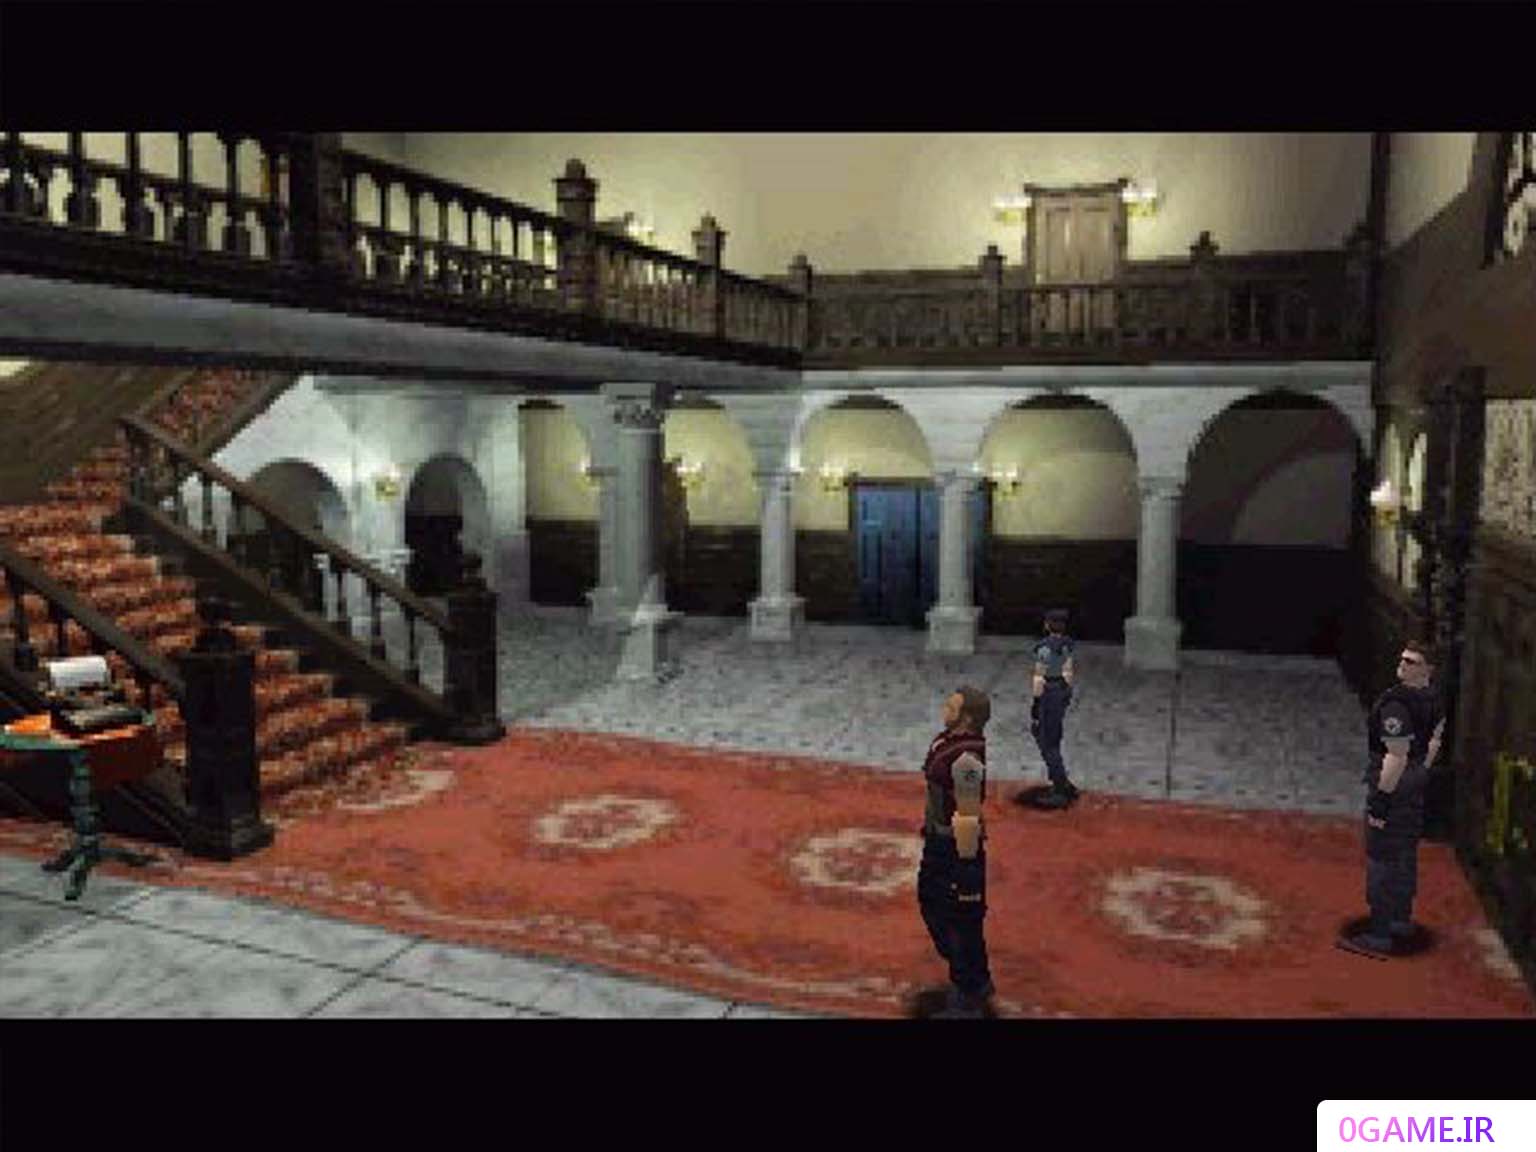 دانلود بازی رزیدنت ایول 1 (Resident Evil) نسخه کامل برای کامپیوتر